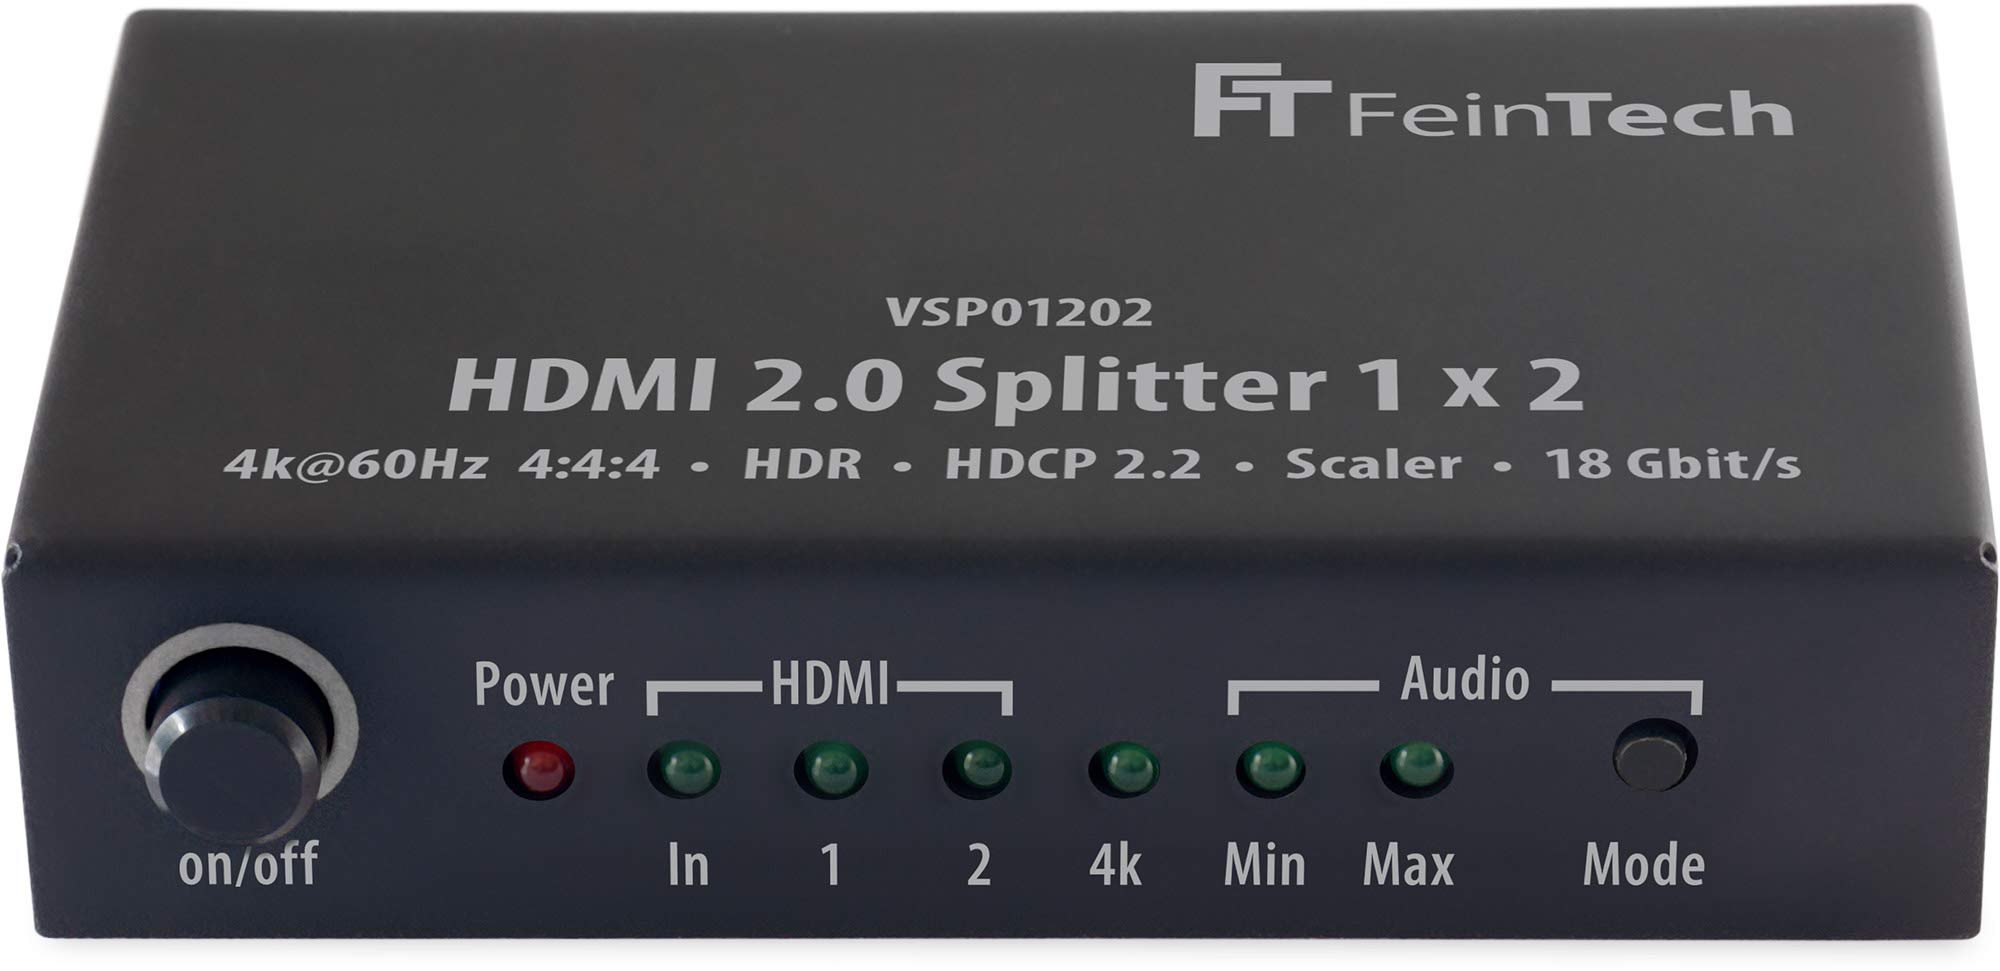 FeinTech VSP01202 HDMI 2.0 Splitter 1x2 mit 4K HDR Down-Scaler Audio-EDID Schwarz